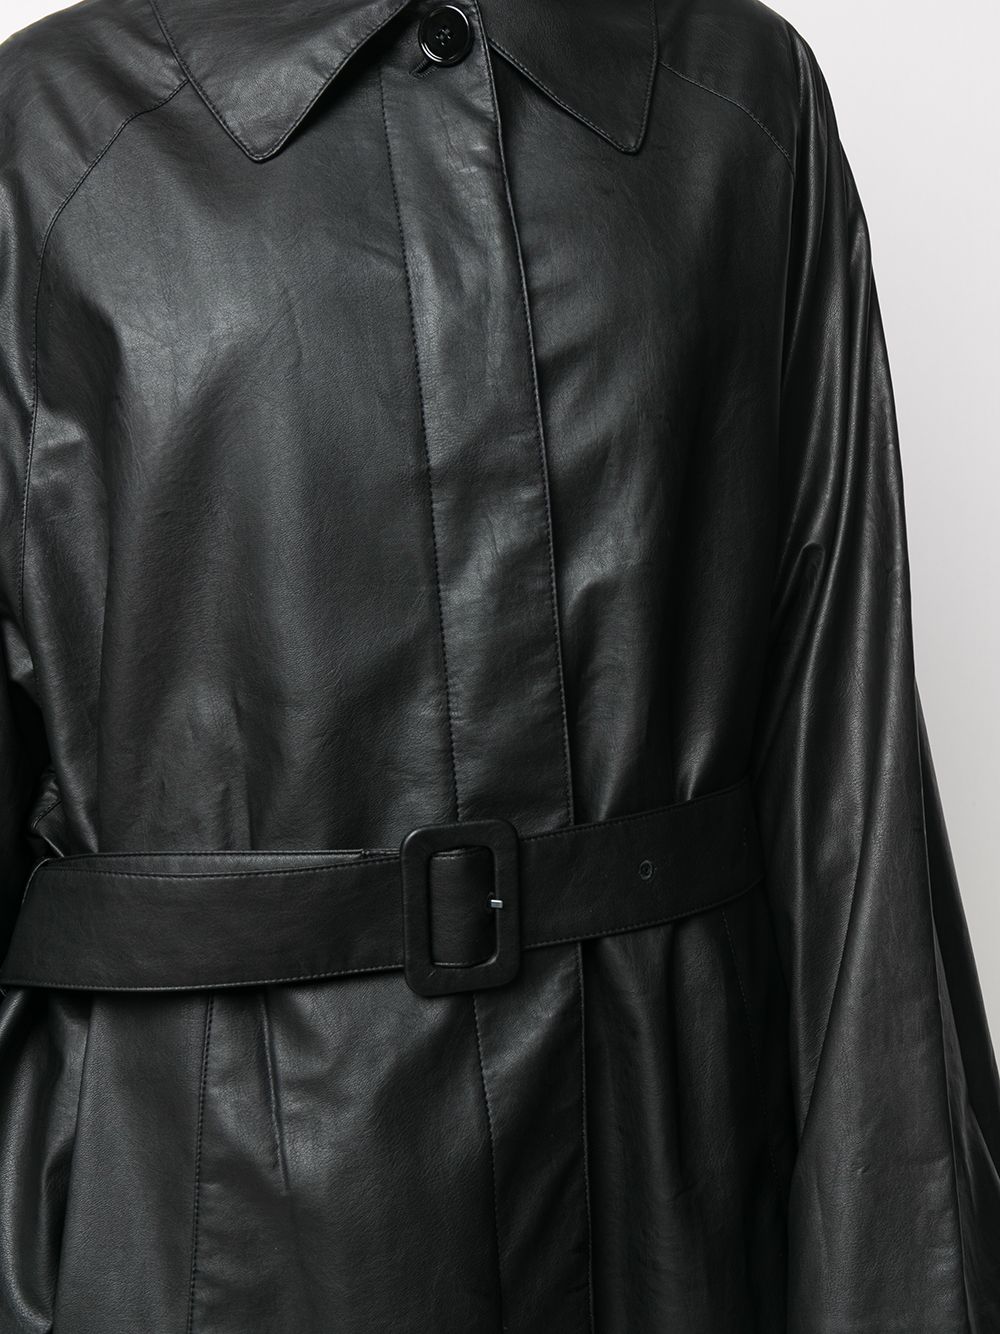 фото Mm6 maison margiela пальто из искусственной кожи с поясом